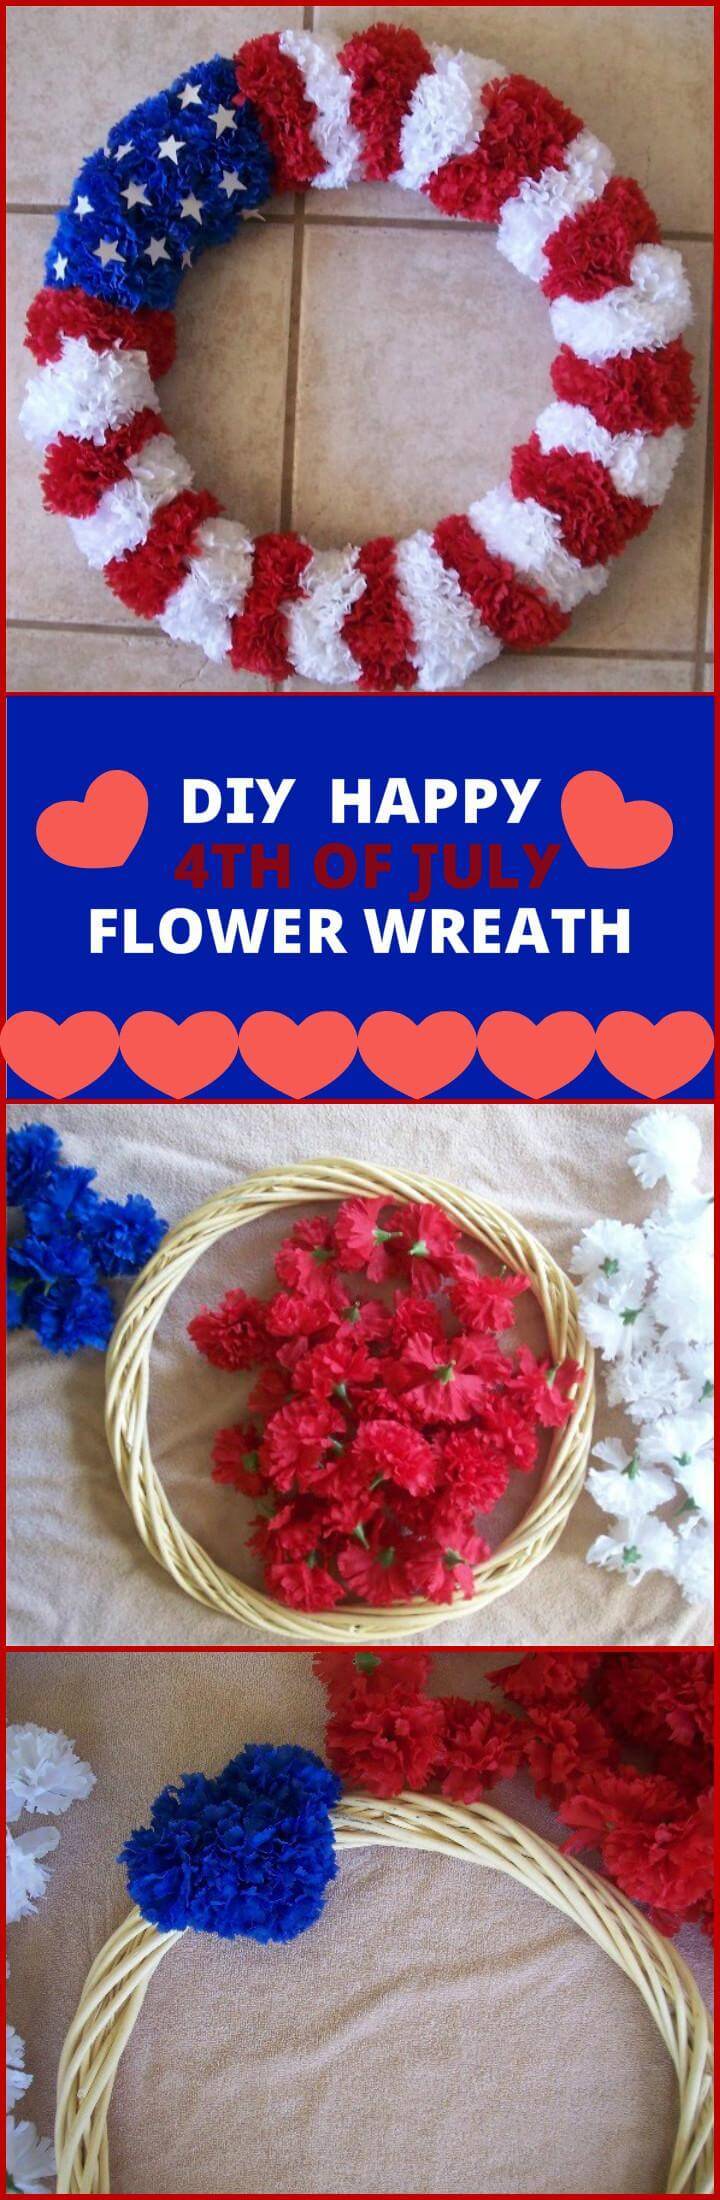 DIY happy 4th of july flower wreath